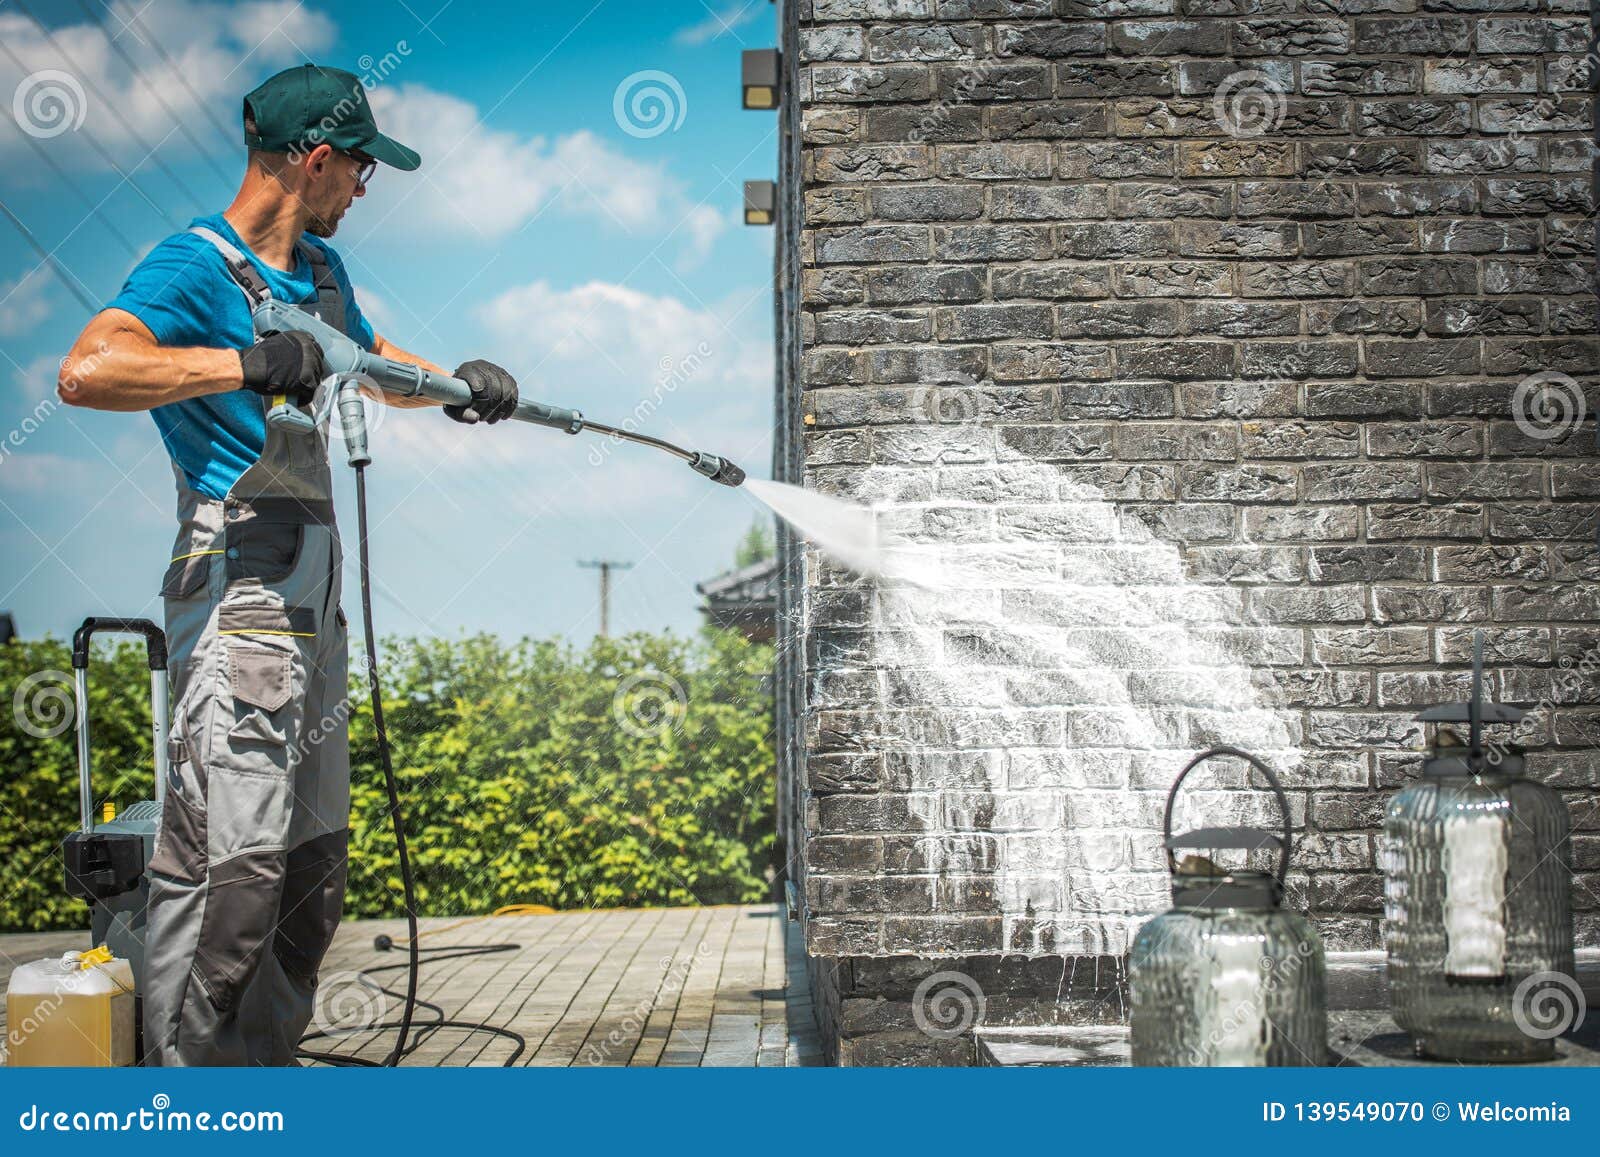 brick wall pressure washing